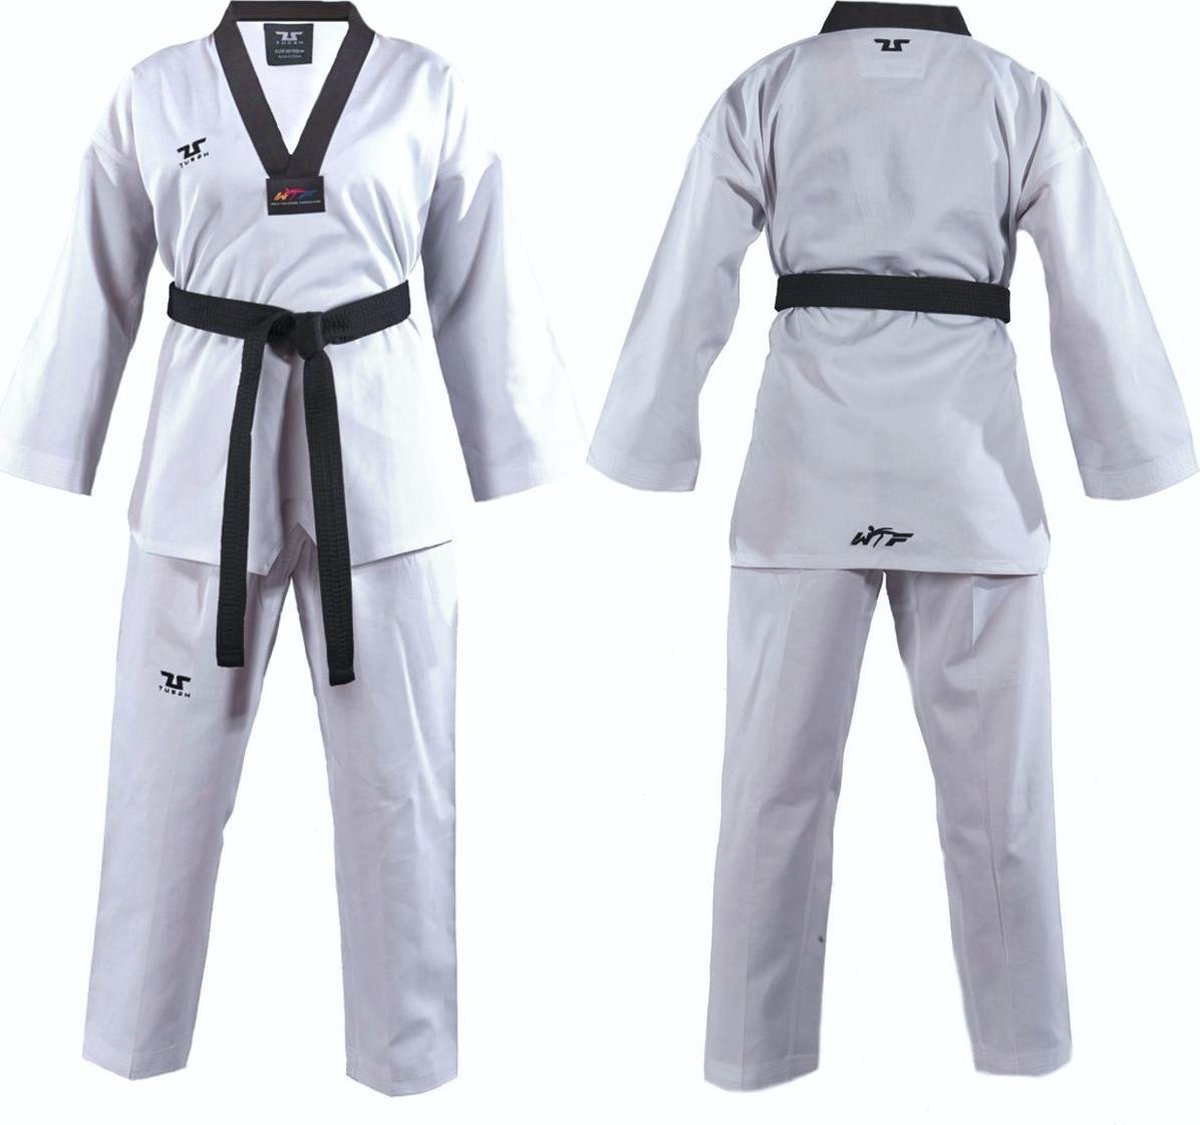 Tusah WTF Taekwondo Pak Plain zwart 140cm